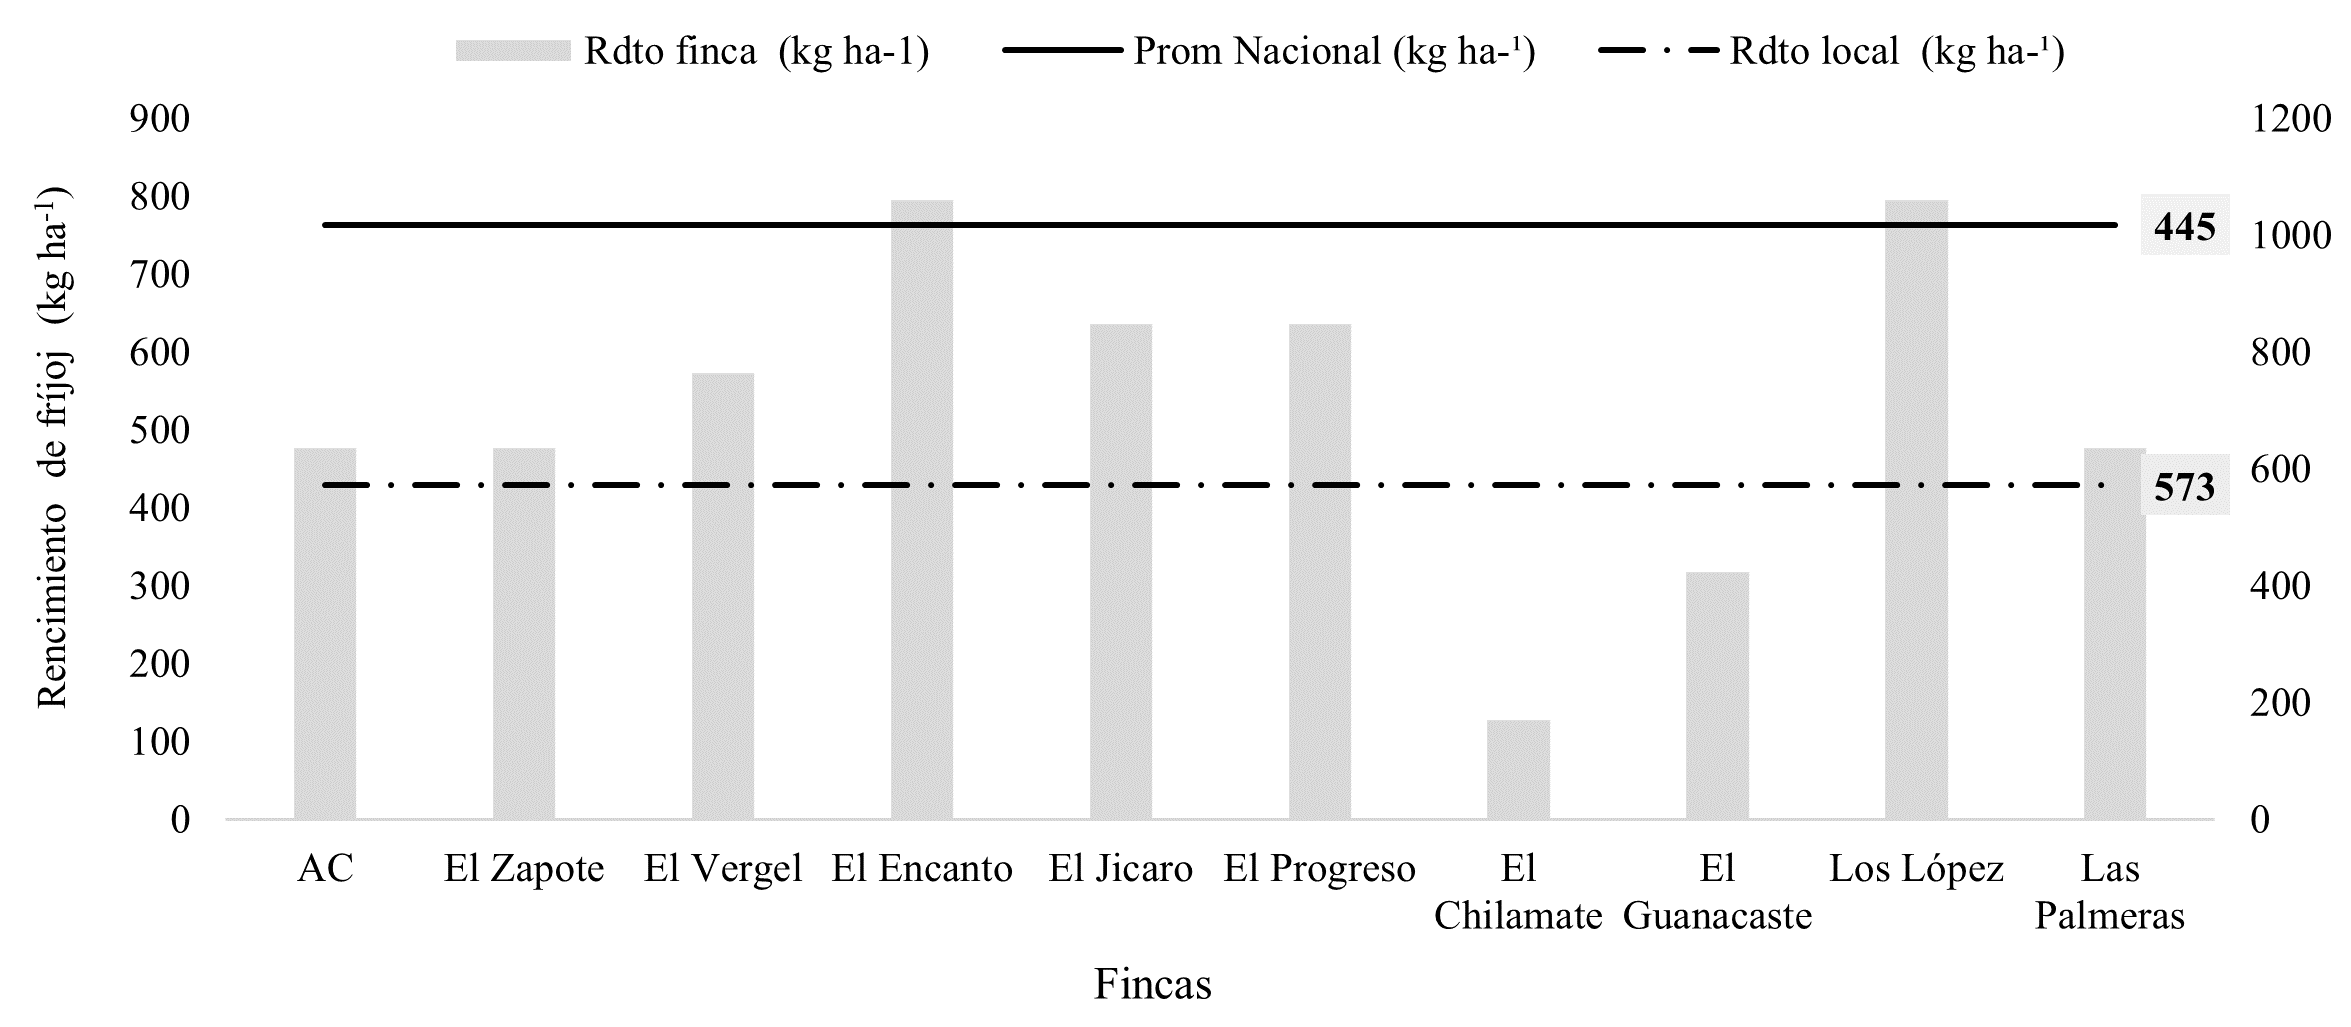 Relación del rendimiento (kg ha-1) del
cultivo de fríjol por finca en relación al promedio local y nacional.